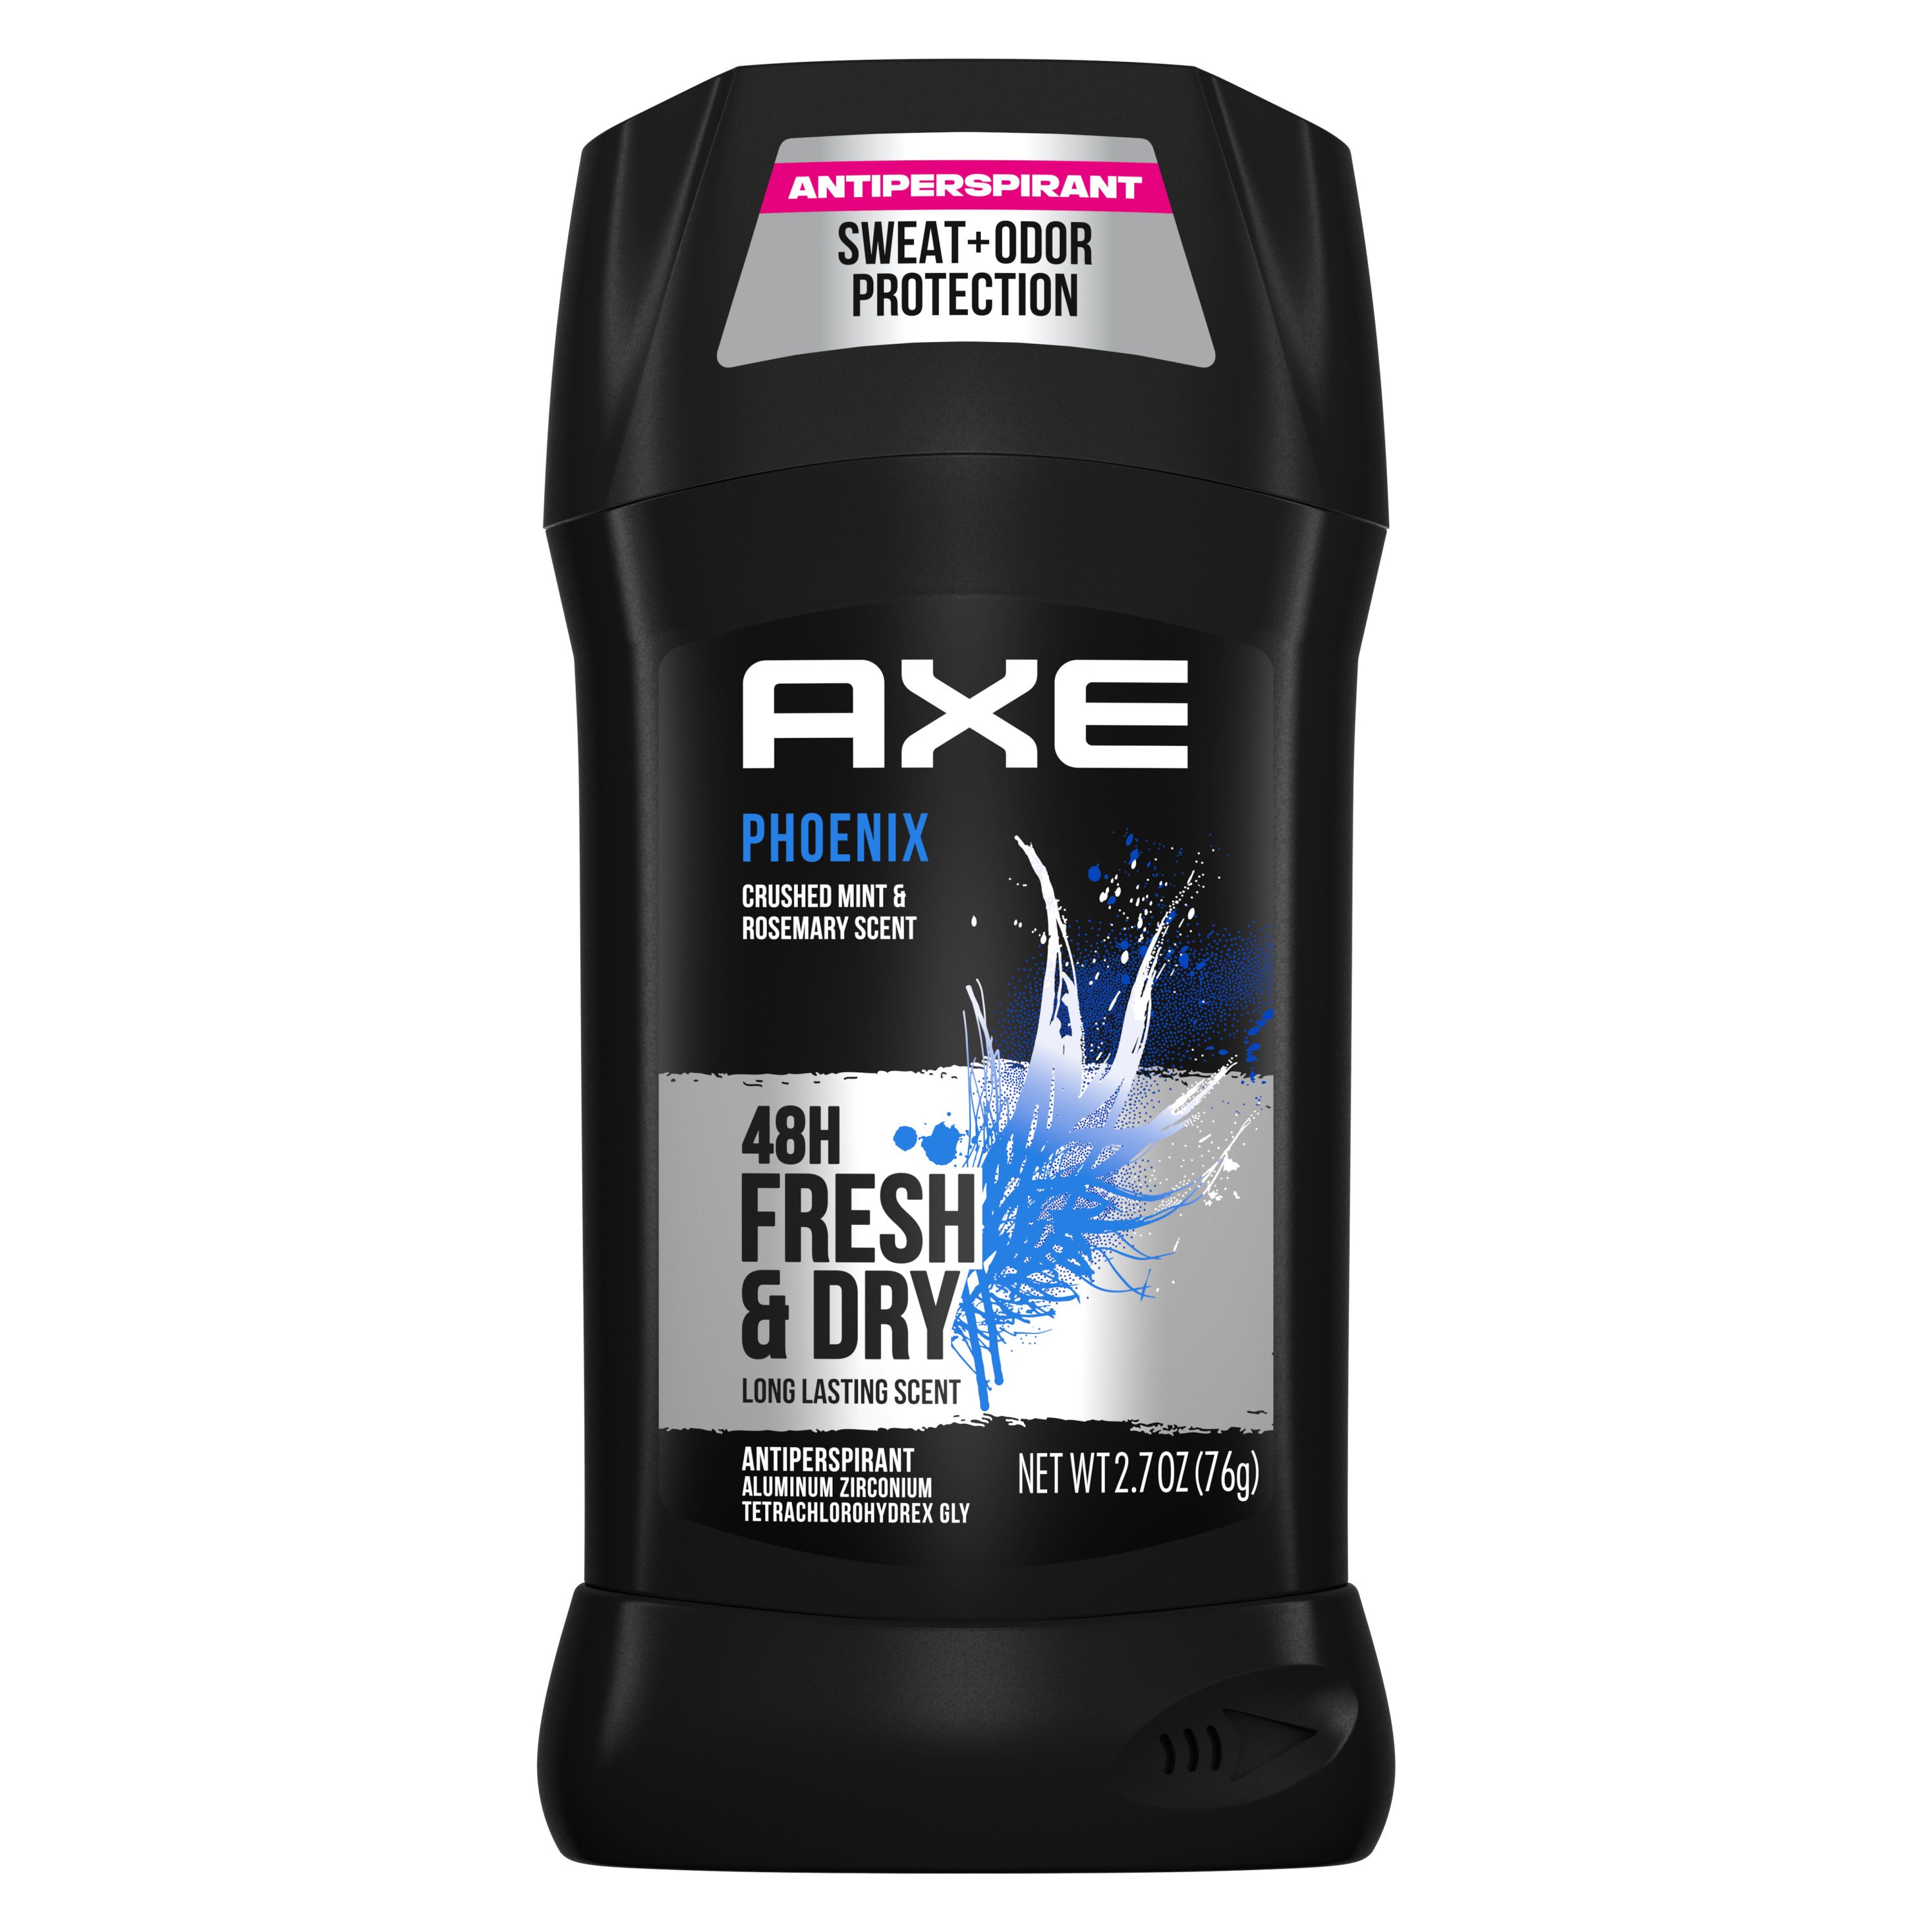 AXE Phoenix Antiperspirant Deodorant Stick for Men - Shop Bath